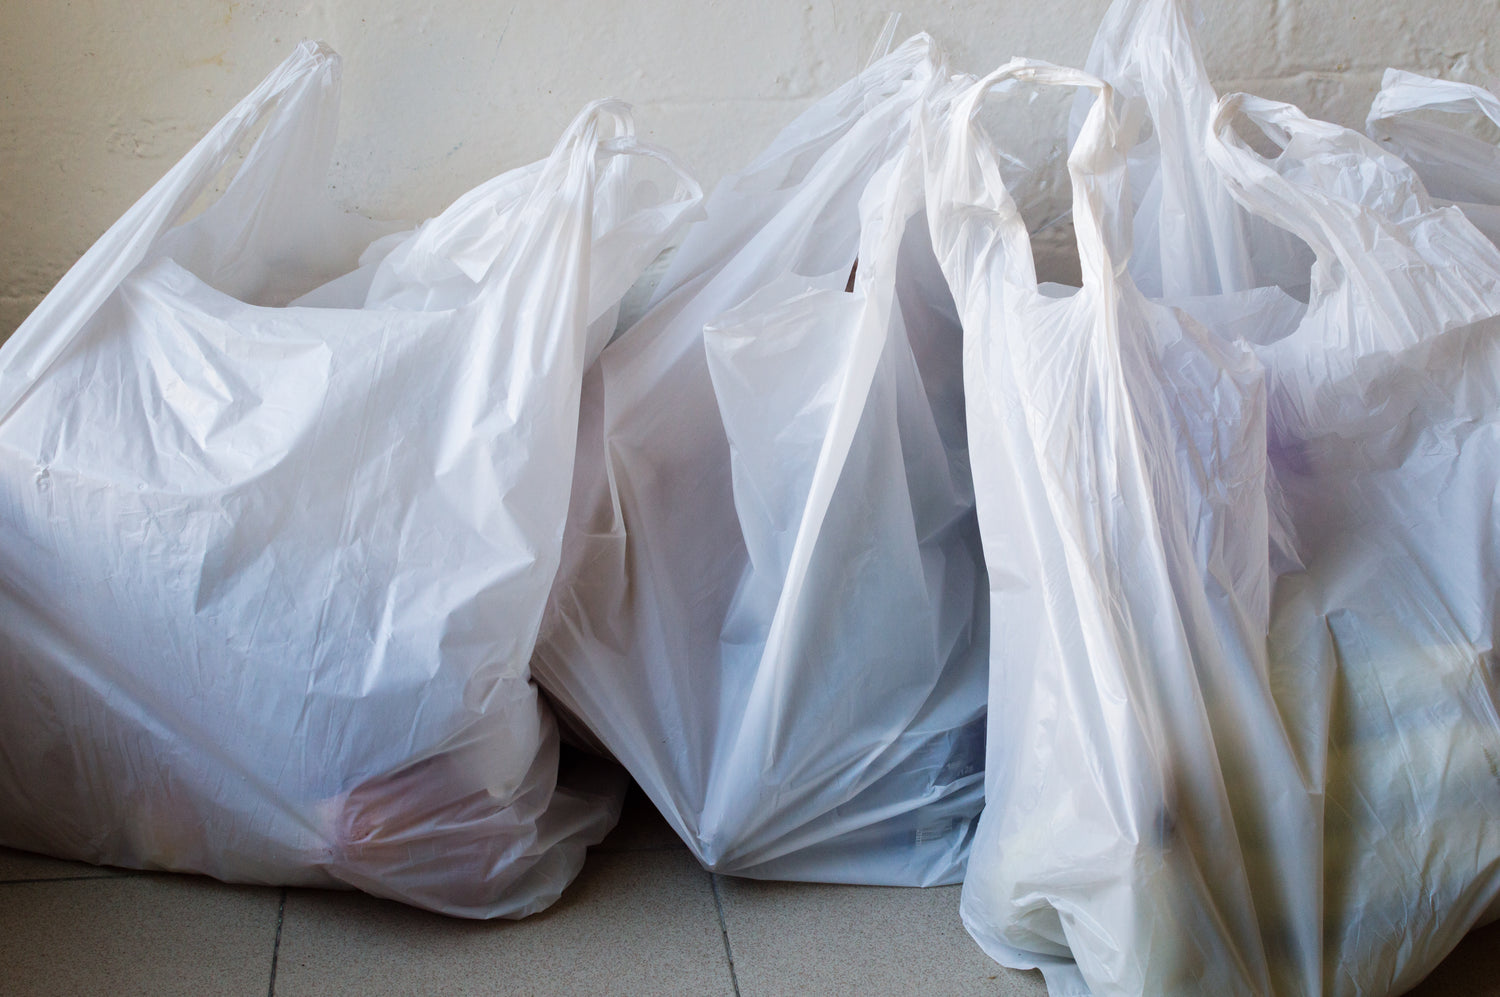 Bulk Plastic Bags